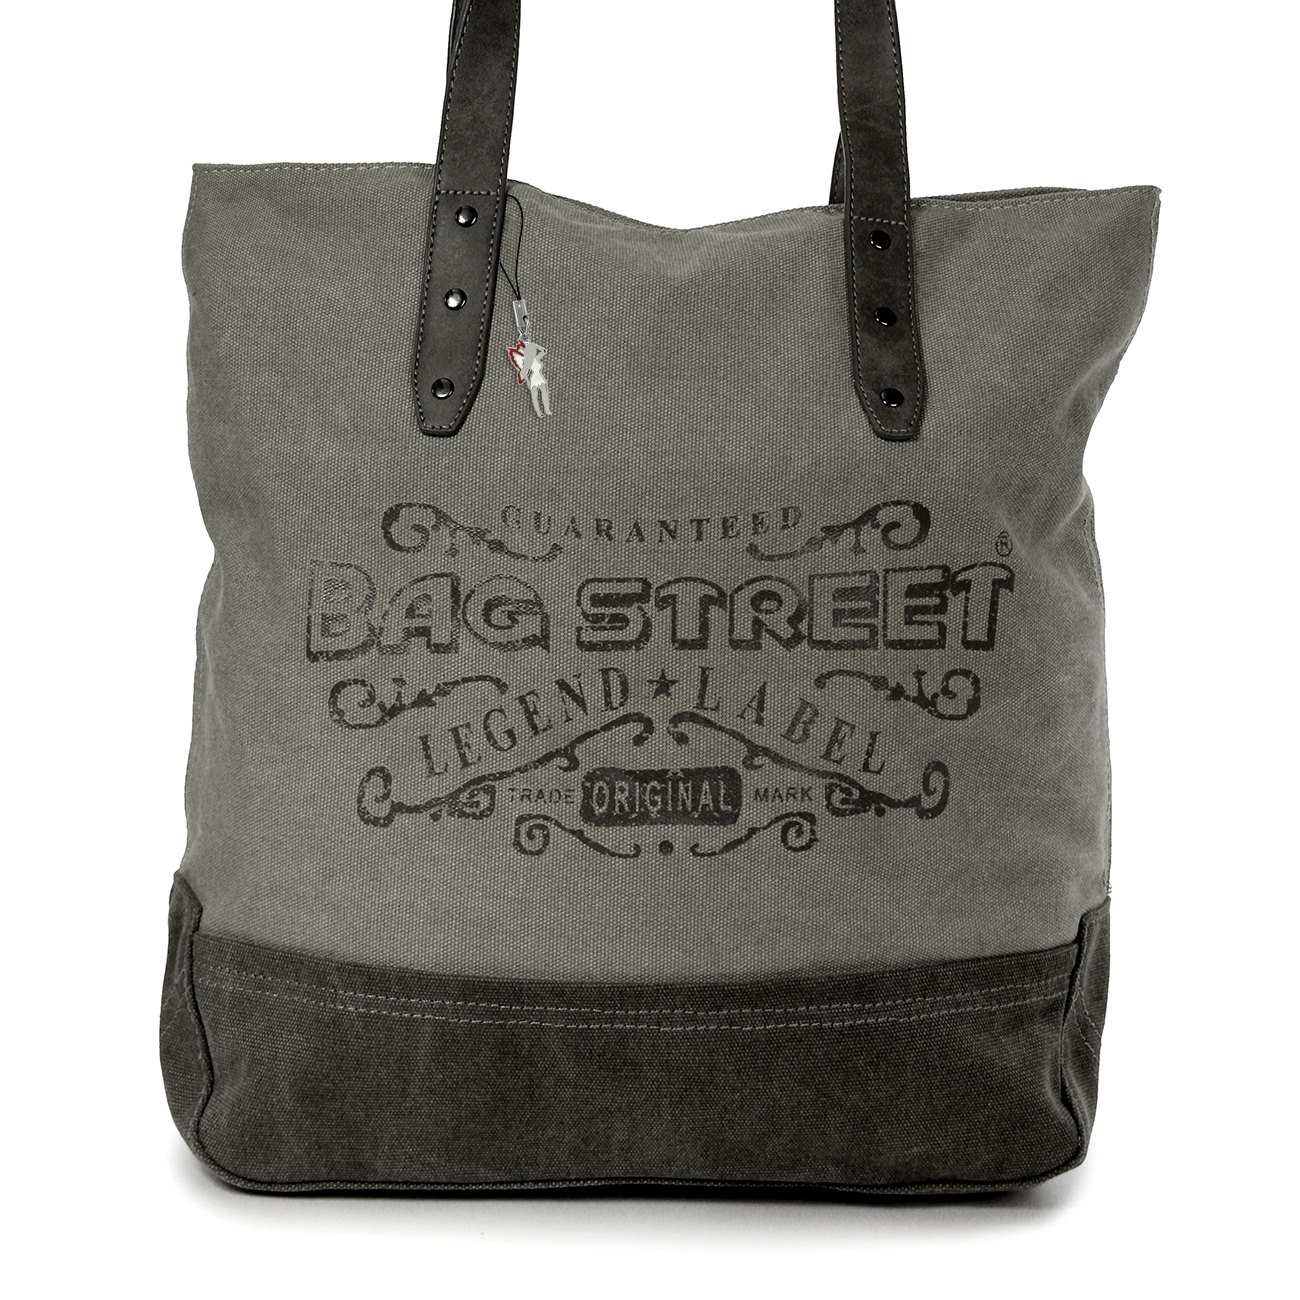 Bag Canvas grey Hobo Bag Shoulder bag Bag Street OTJ219K | eBay